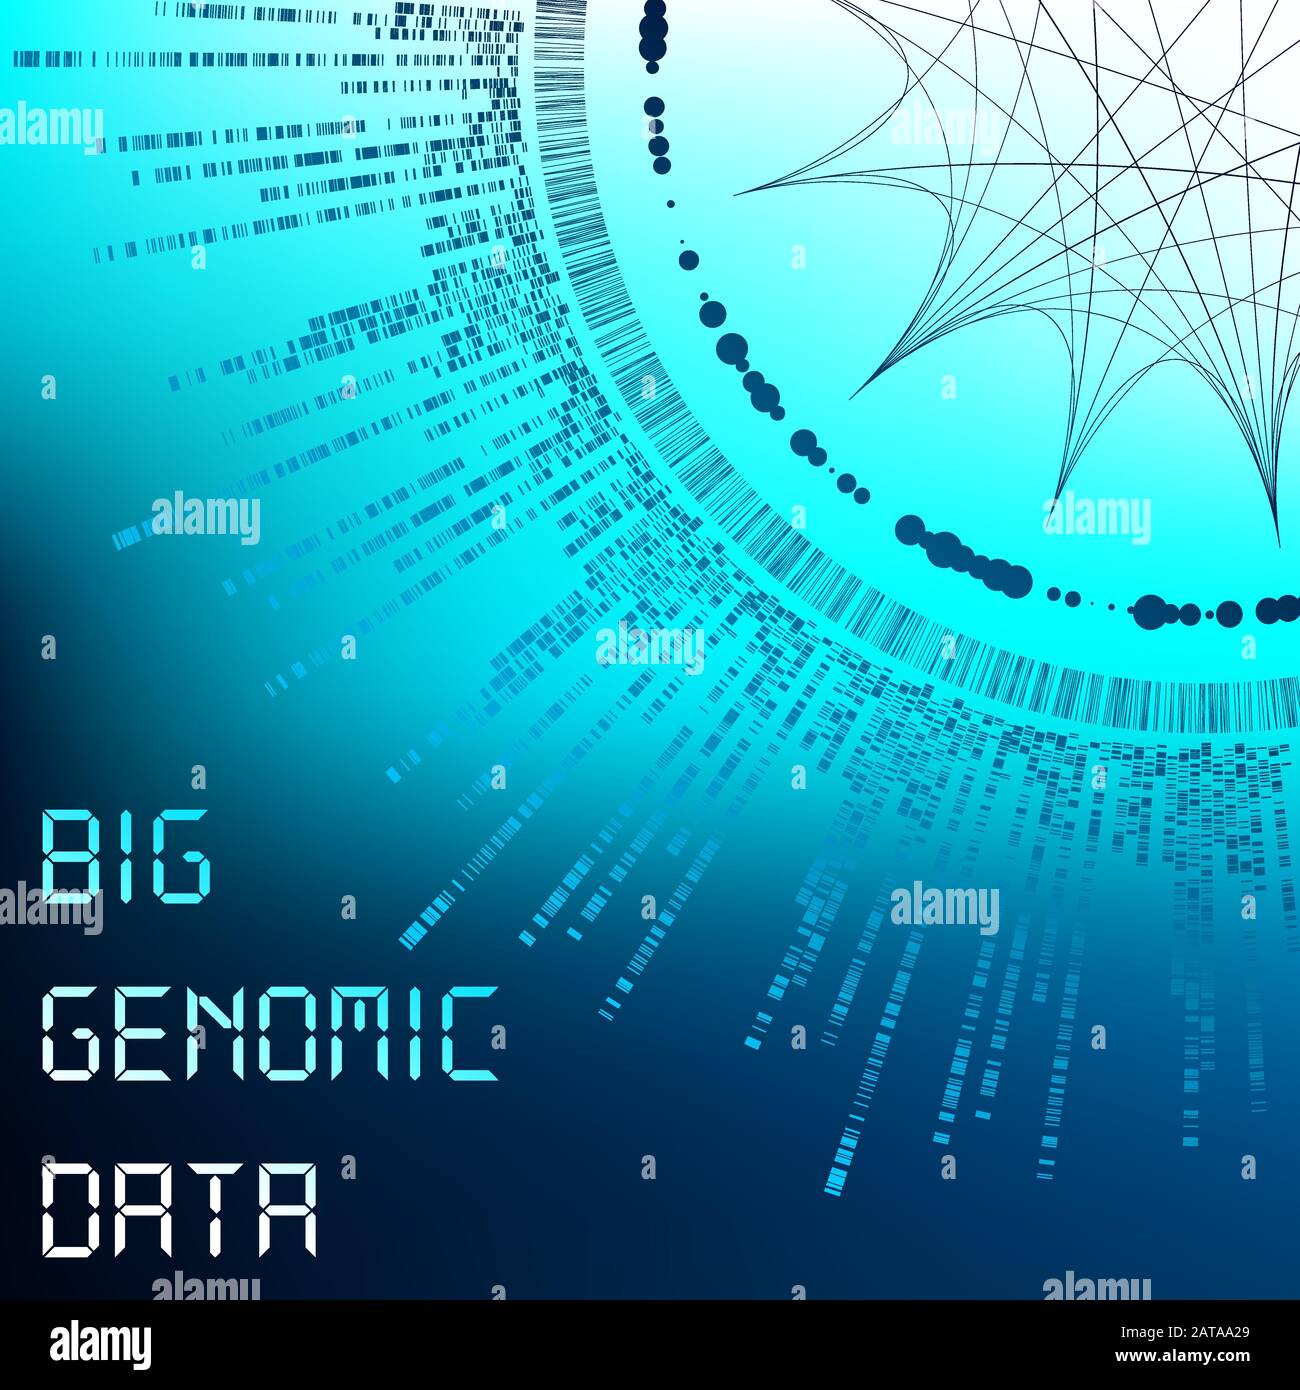 Visualizzazione Di Grandi Dati Genomici - Test Dna, Barcoding, Architettura Mappa Genom - Modello Grafico Vettoriale Illustrazione Vettoriale